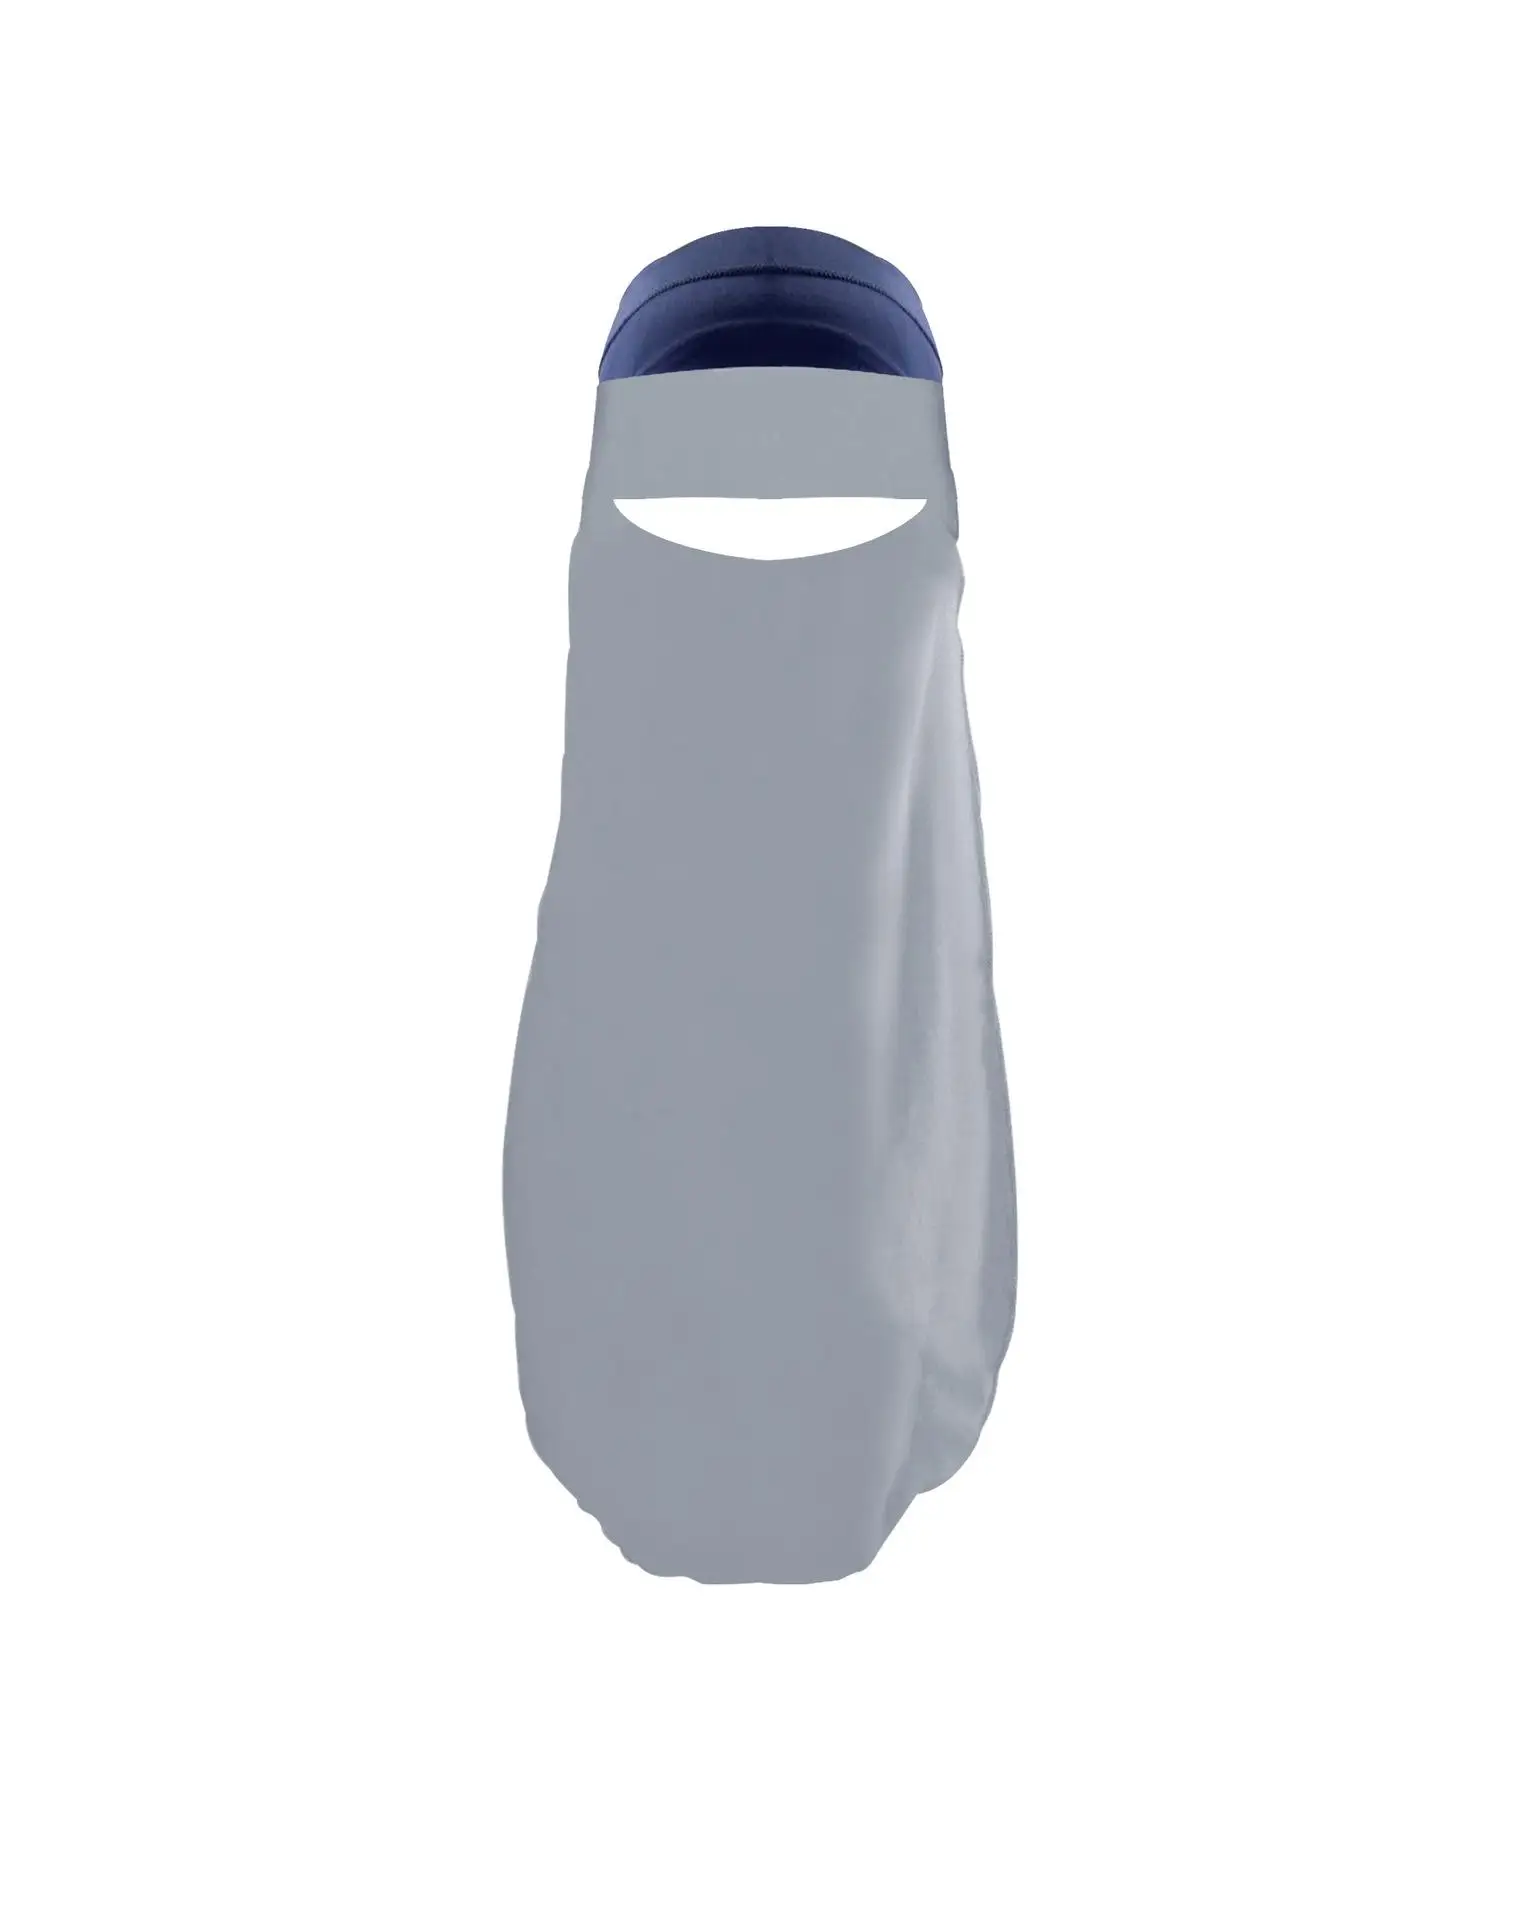 Niqab мусульманские женщины Burka накладные вуали хиджаб лицо Обложка ислам Burqa скромная одежда однослойный один кусок Рамадан Ближний Восток - Цвет: Серый